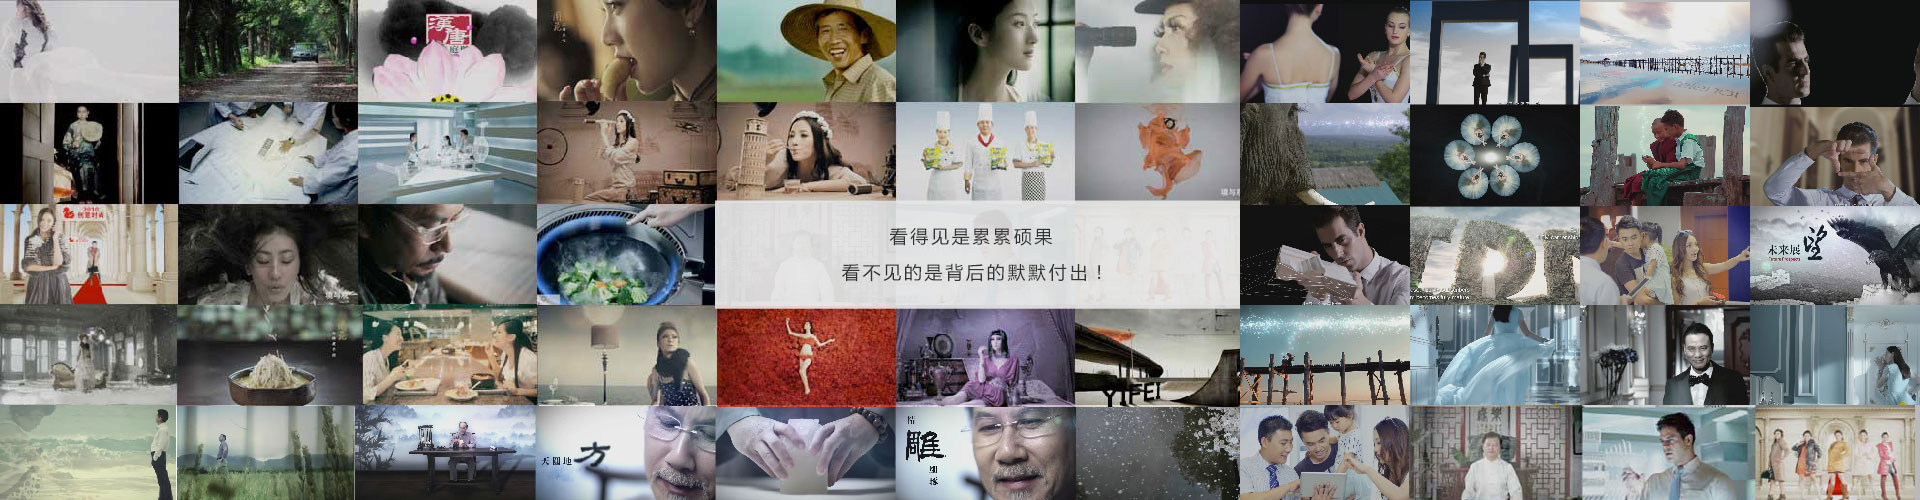 <b>深圳影视公司讲述短视频的良性发展</b>